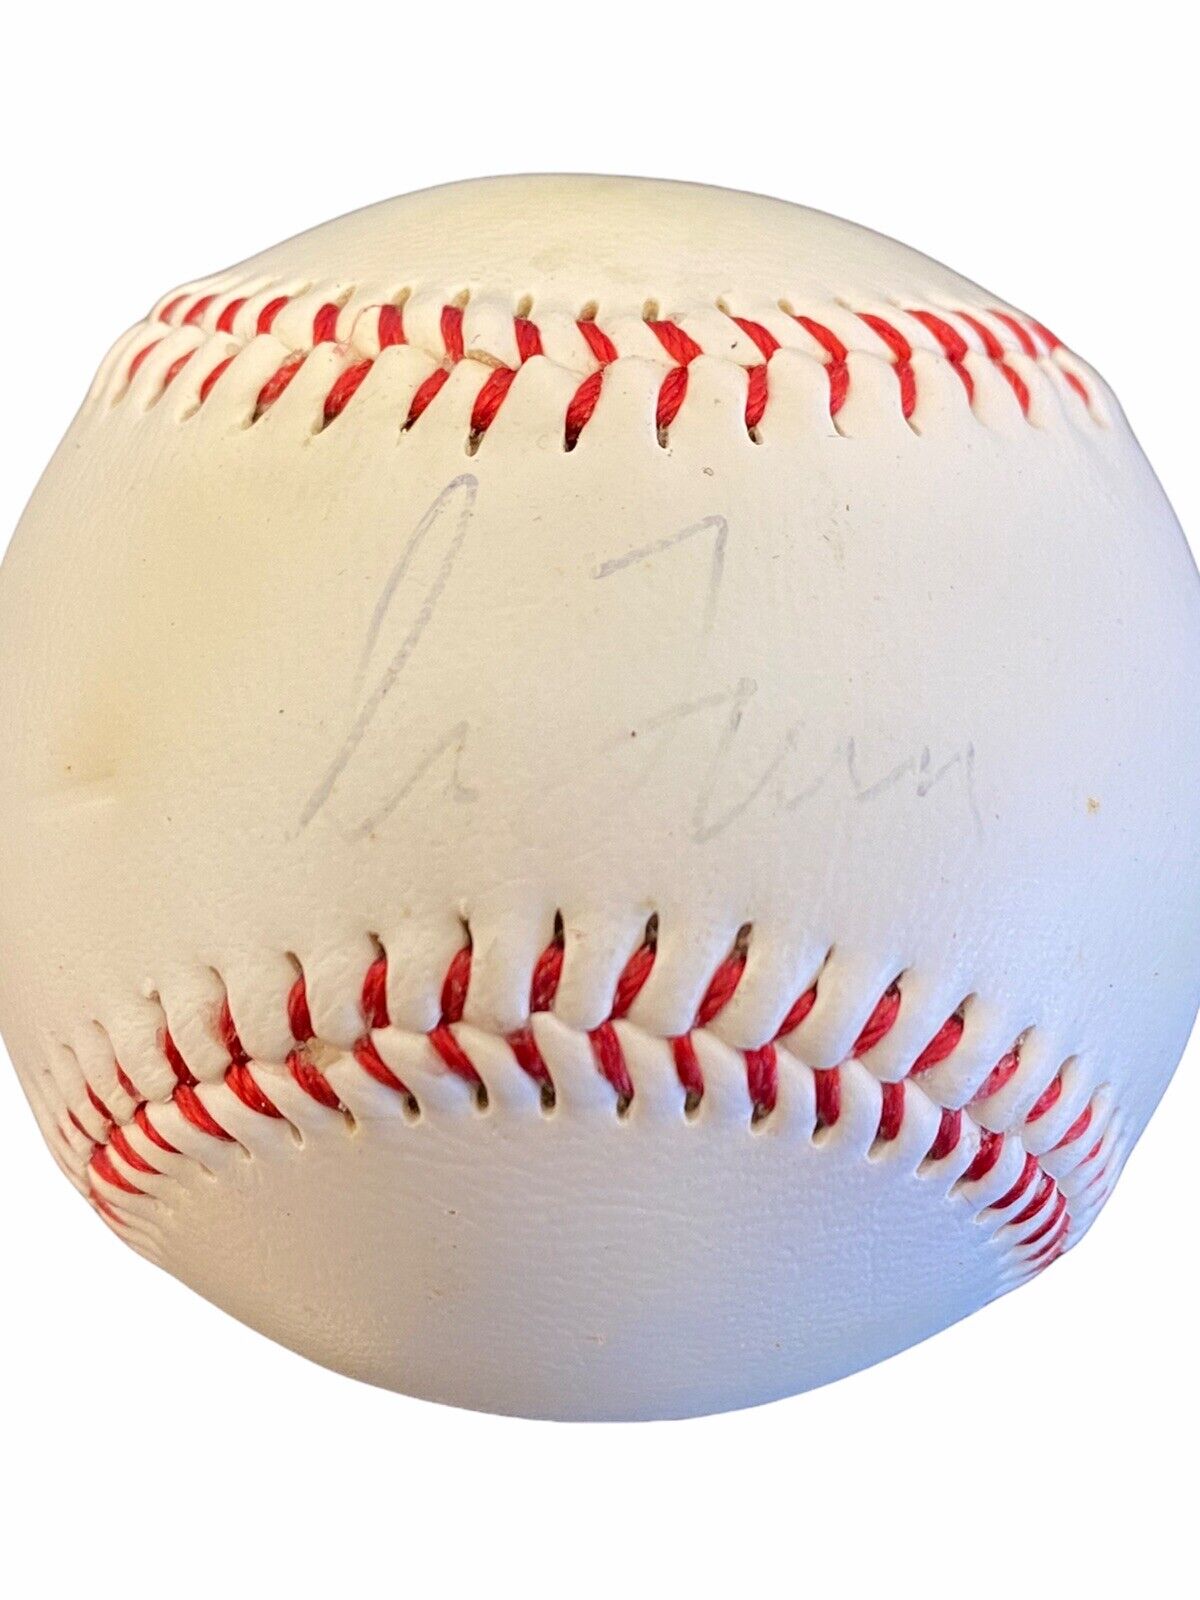 HOF Greg Maddux Signed MLB Baseball - Autograph - COA - Atlanta Braves